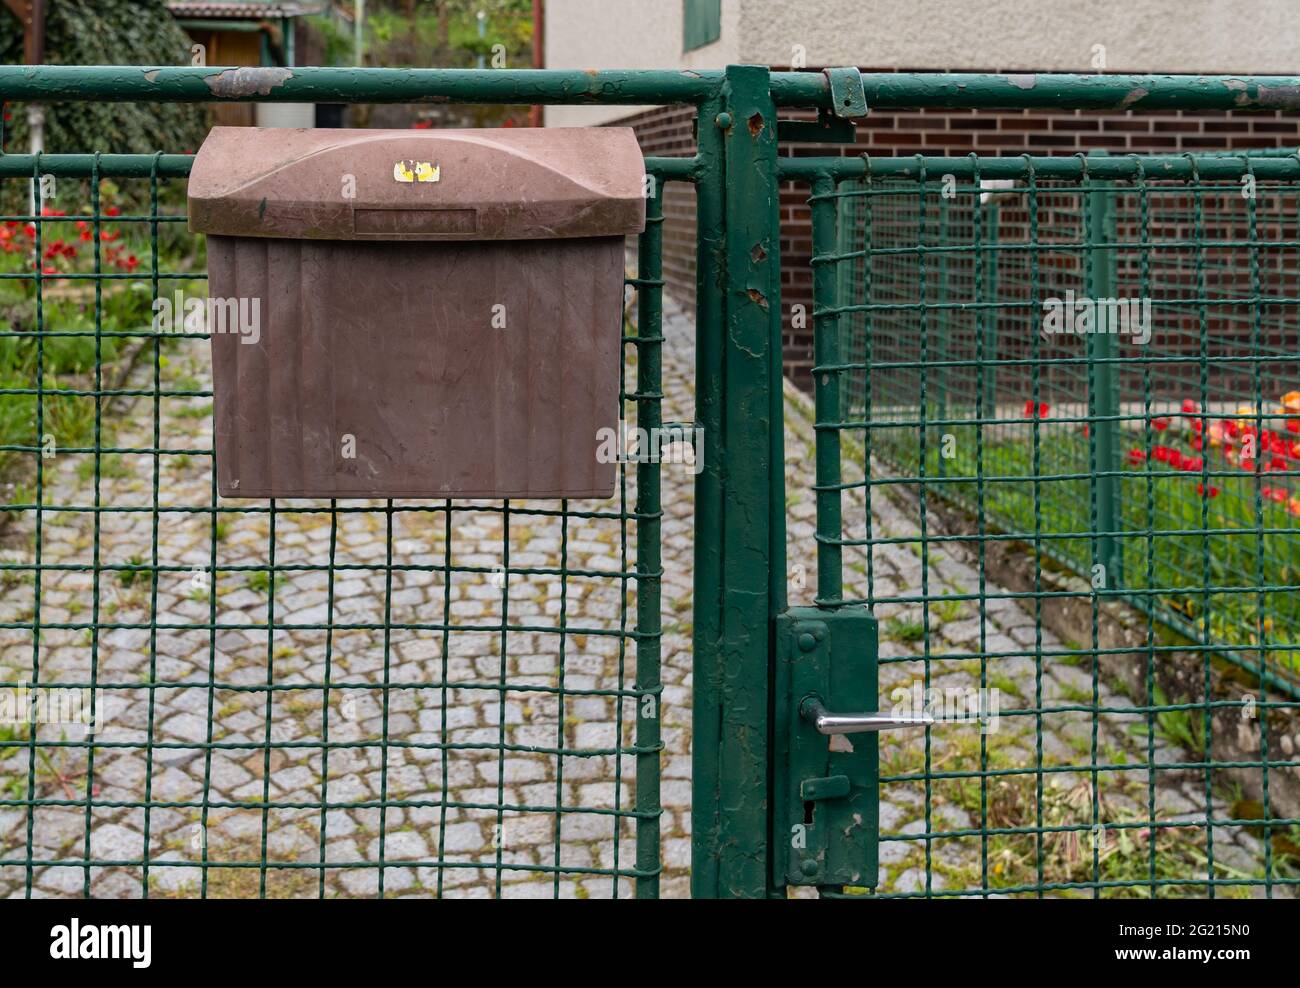 ancienne boîte aux lettres sur la clôture devant la maison Photo Stock -  Alamy